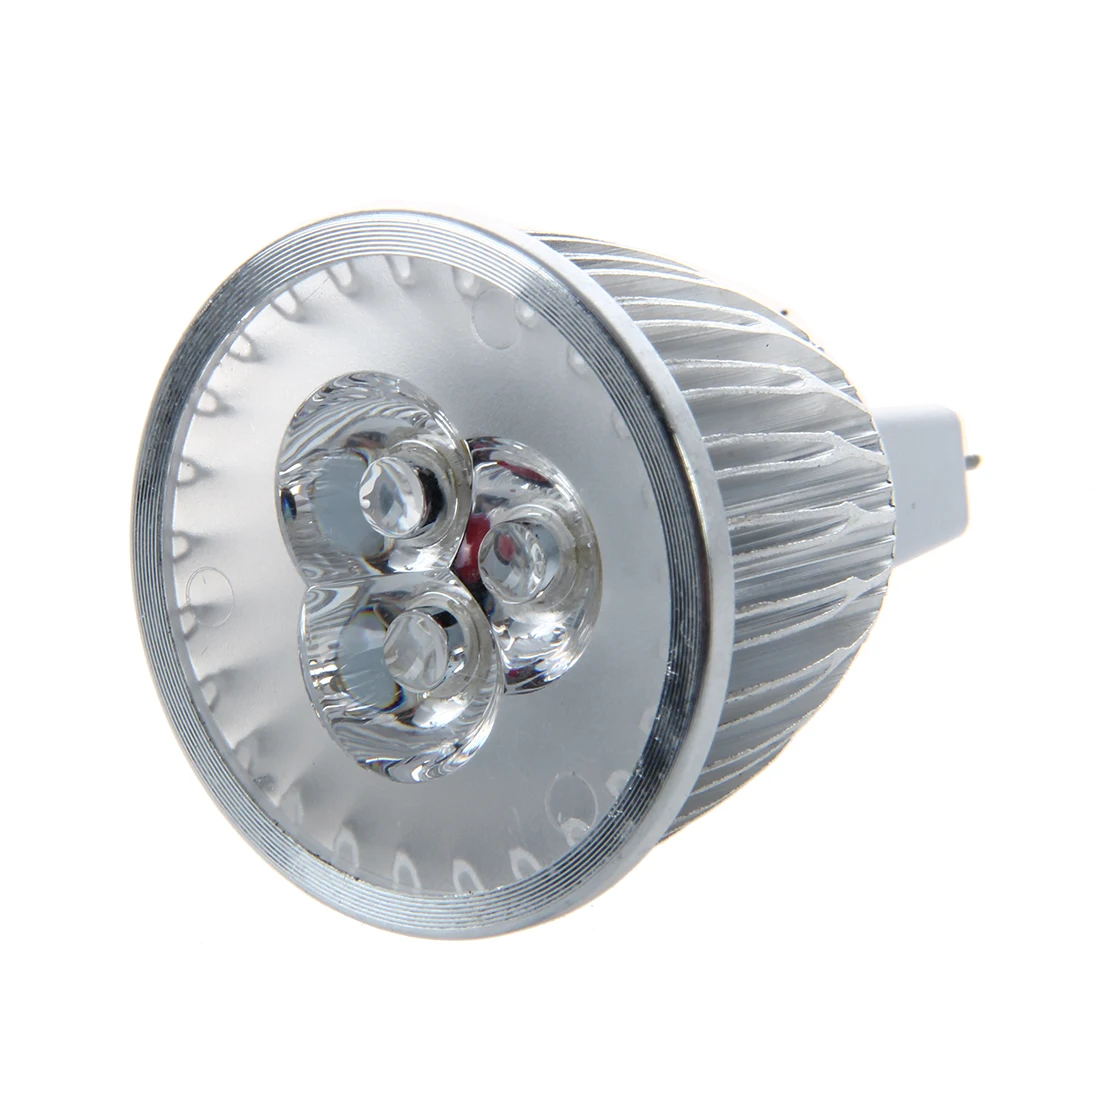 6 Вт MR16 GU5.3 теплый белый 3 светодиодный свет лампы прожектор высокой Мощность для встраиваемые и под кабинет освещения лампы